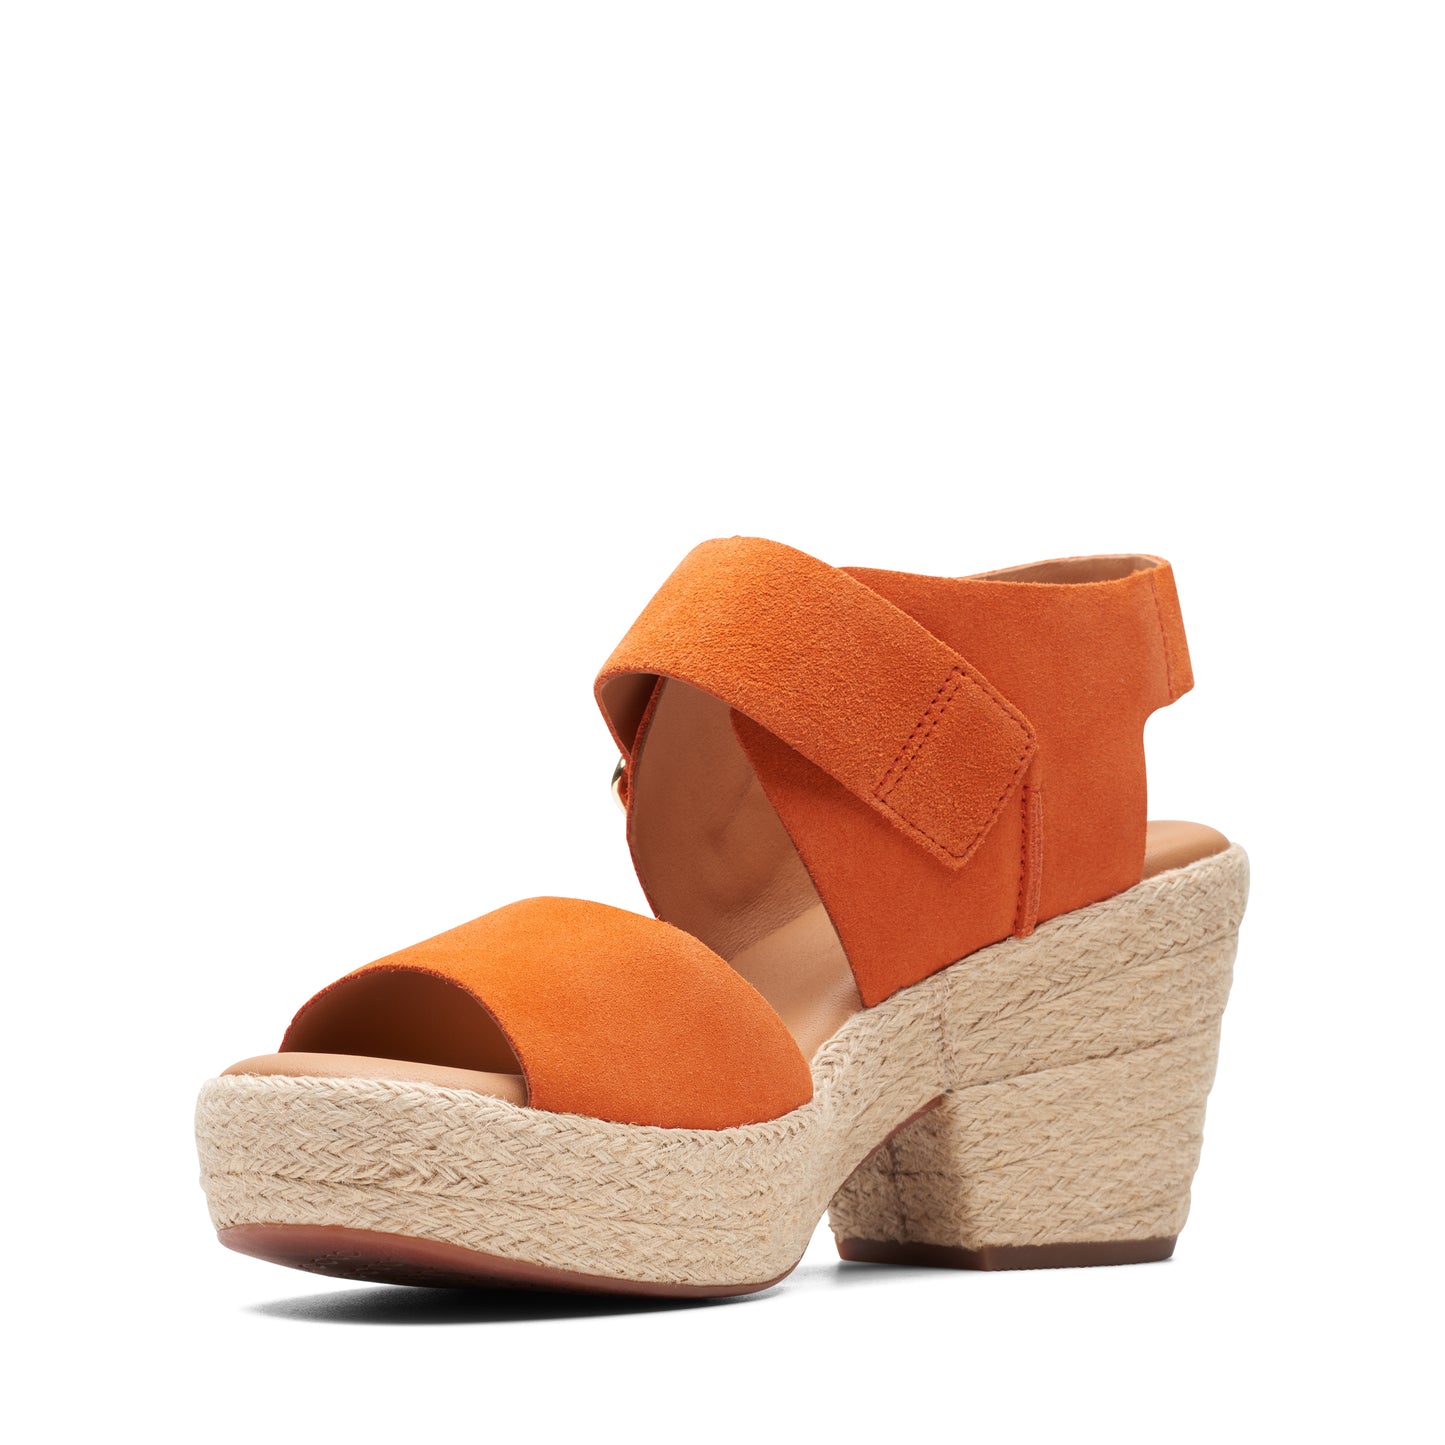 Zapato De Cuña De La Marca Clarks Para Mujer Modelo Kimmei Hi Strap Orange Suede En Color Naranja